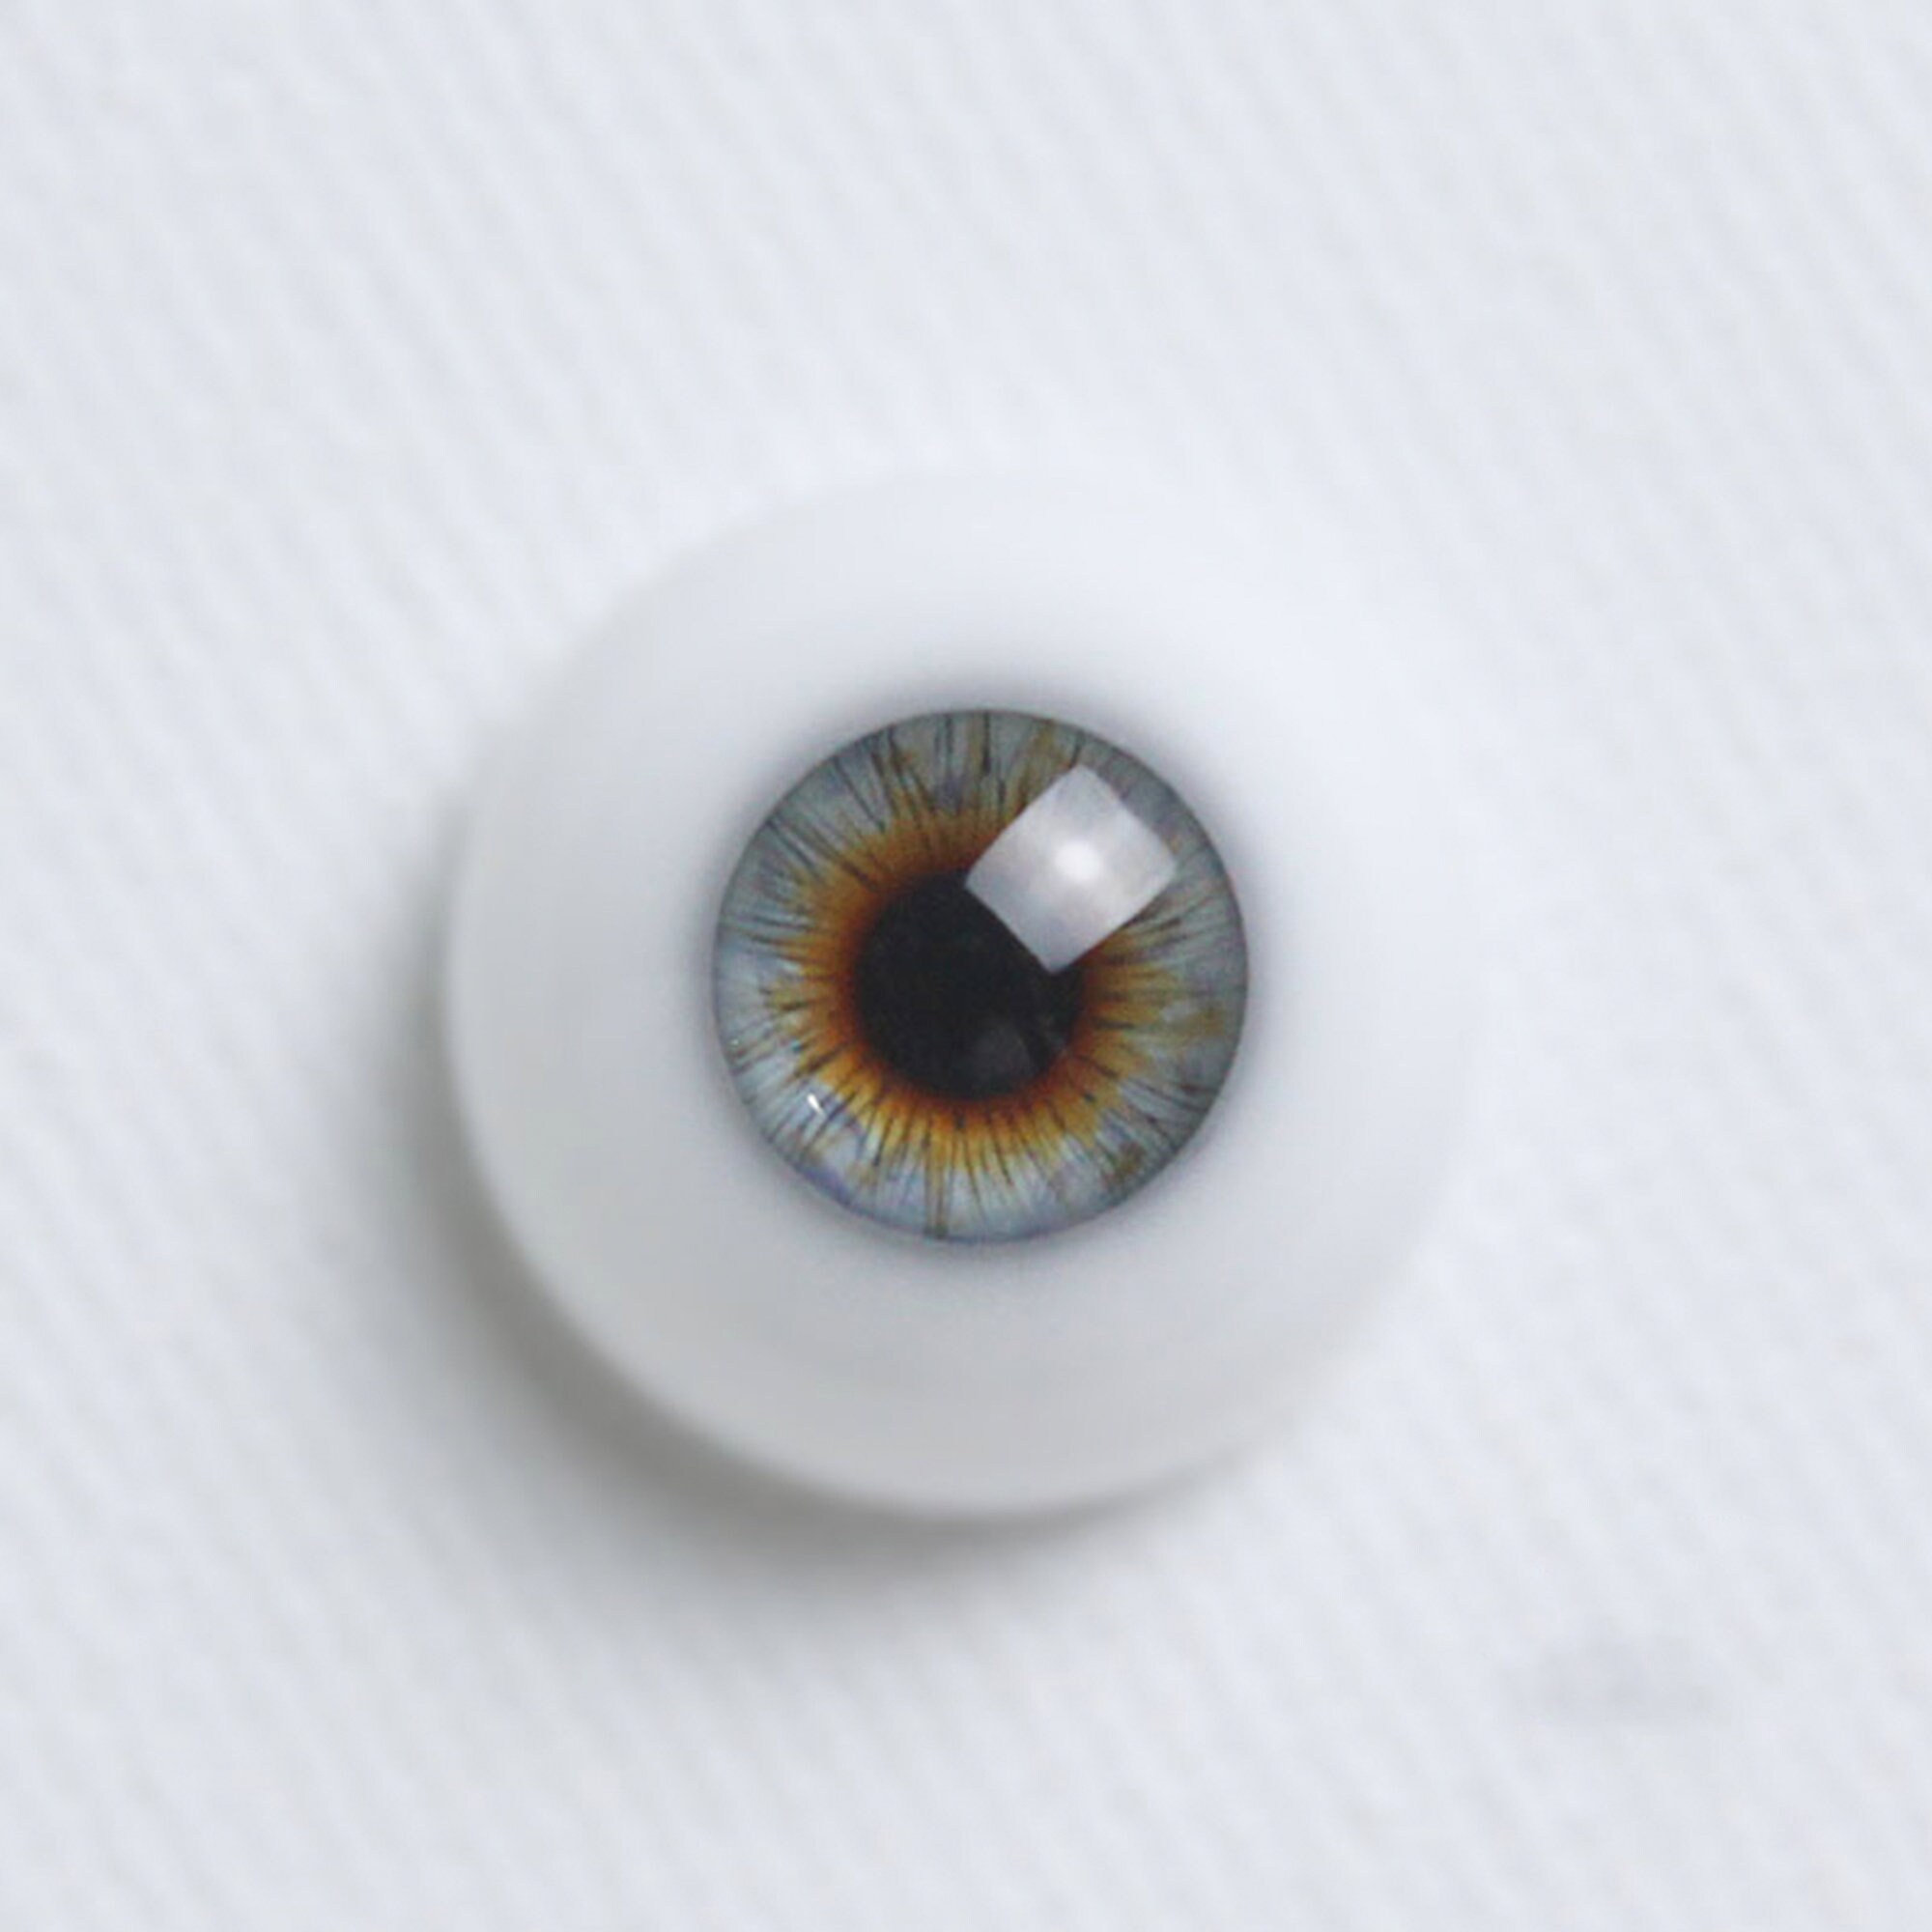 SD BJD Eyes/resin Eyes/realistic Eyes/blyth Eyes/ Eyes/safety Eyes/doll Eyes  8mm 10mm 12mm 14mm 16mm 18mm 24mm 30mm 